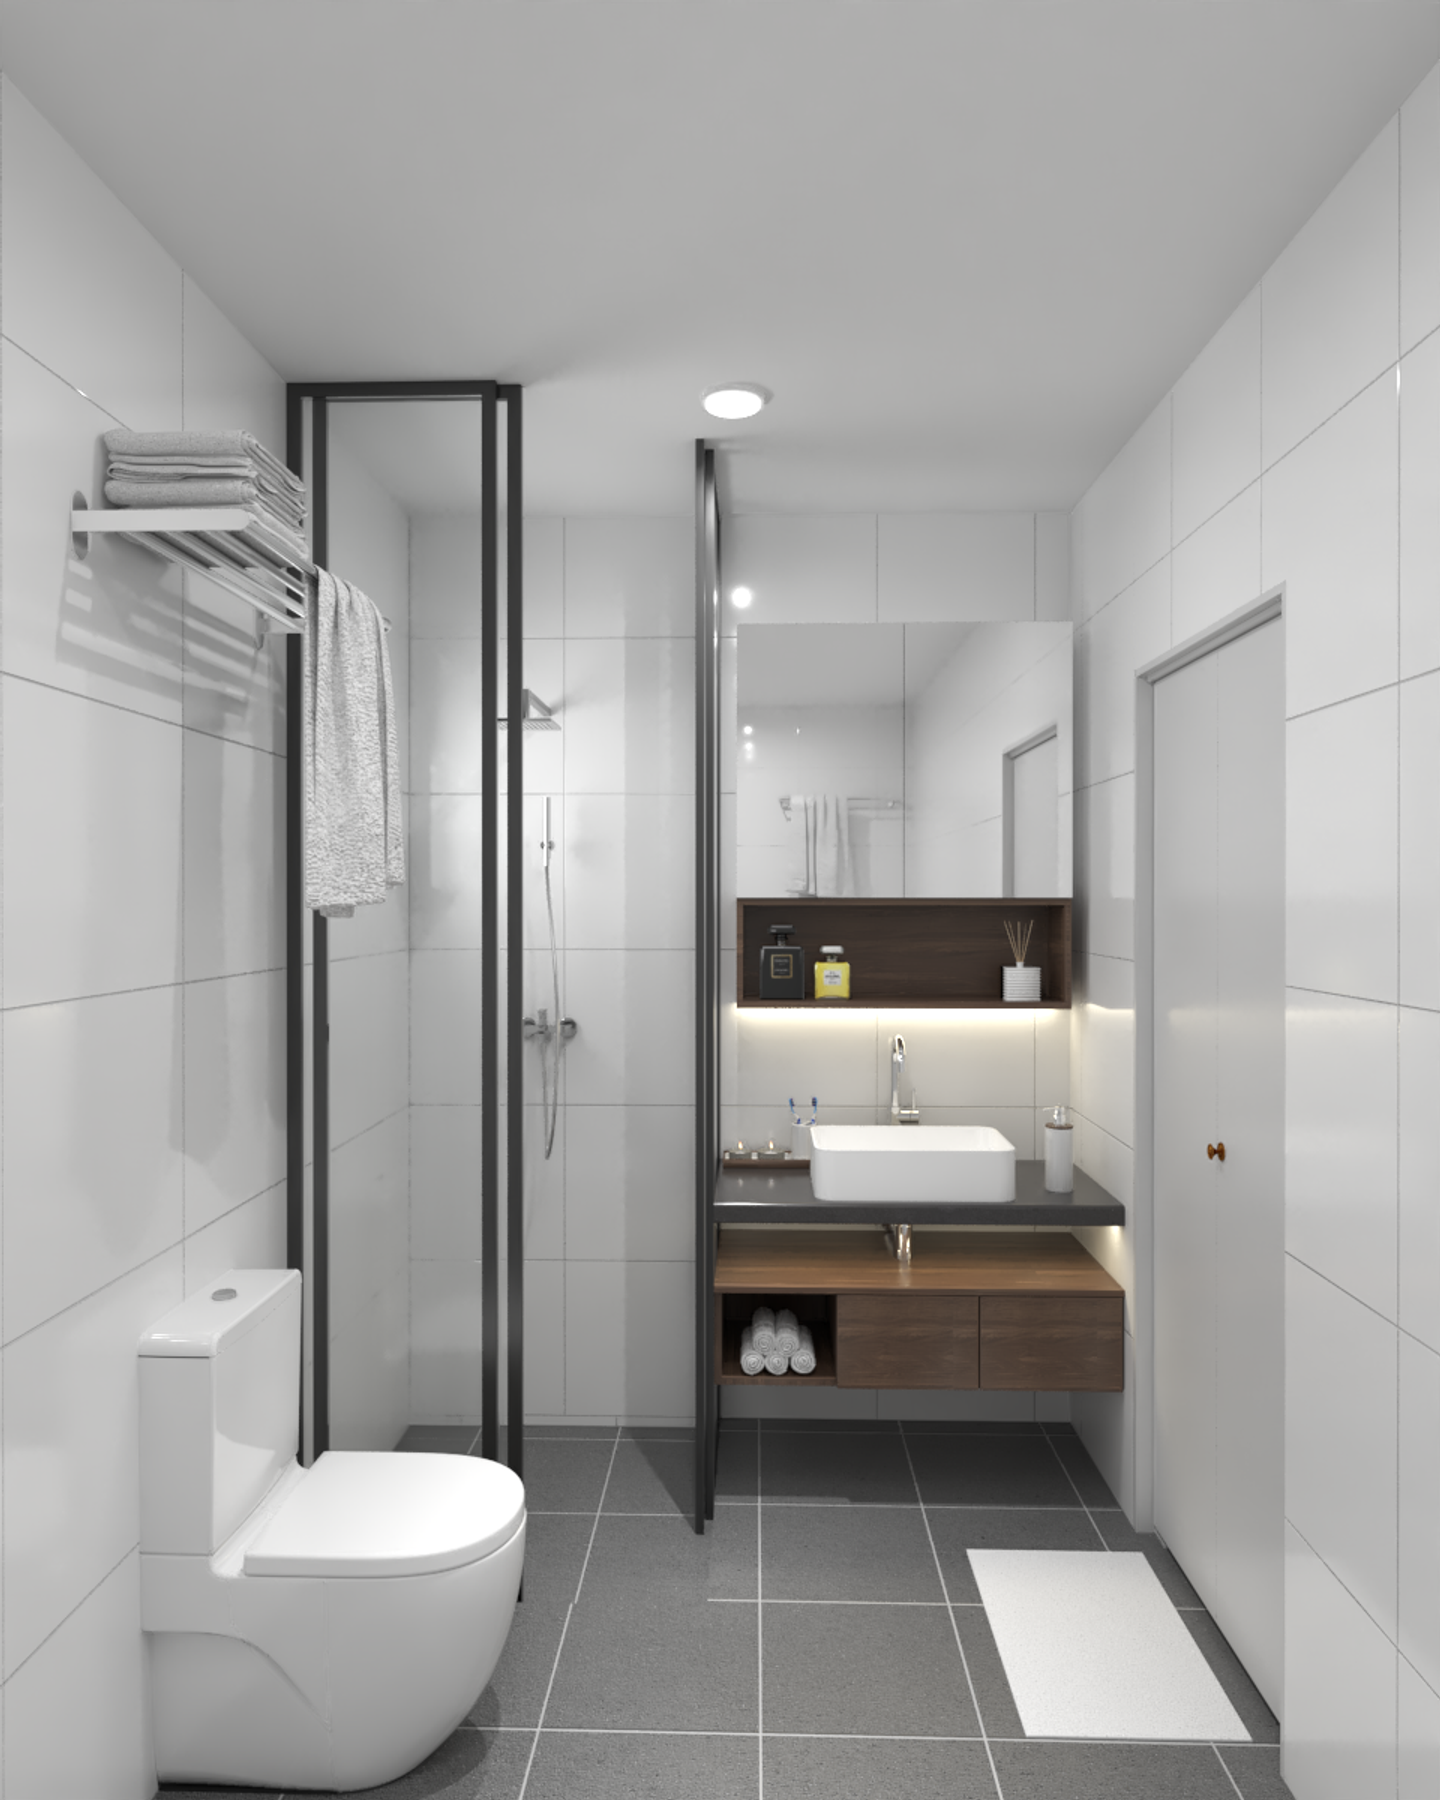 Mirror Storage Under Sink Cabinet Spacious Bathroom Design - Livspace